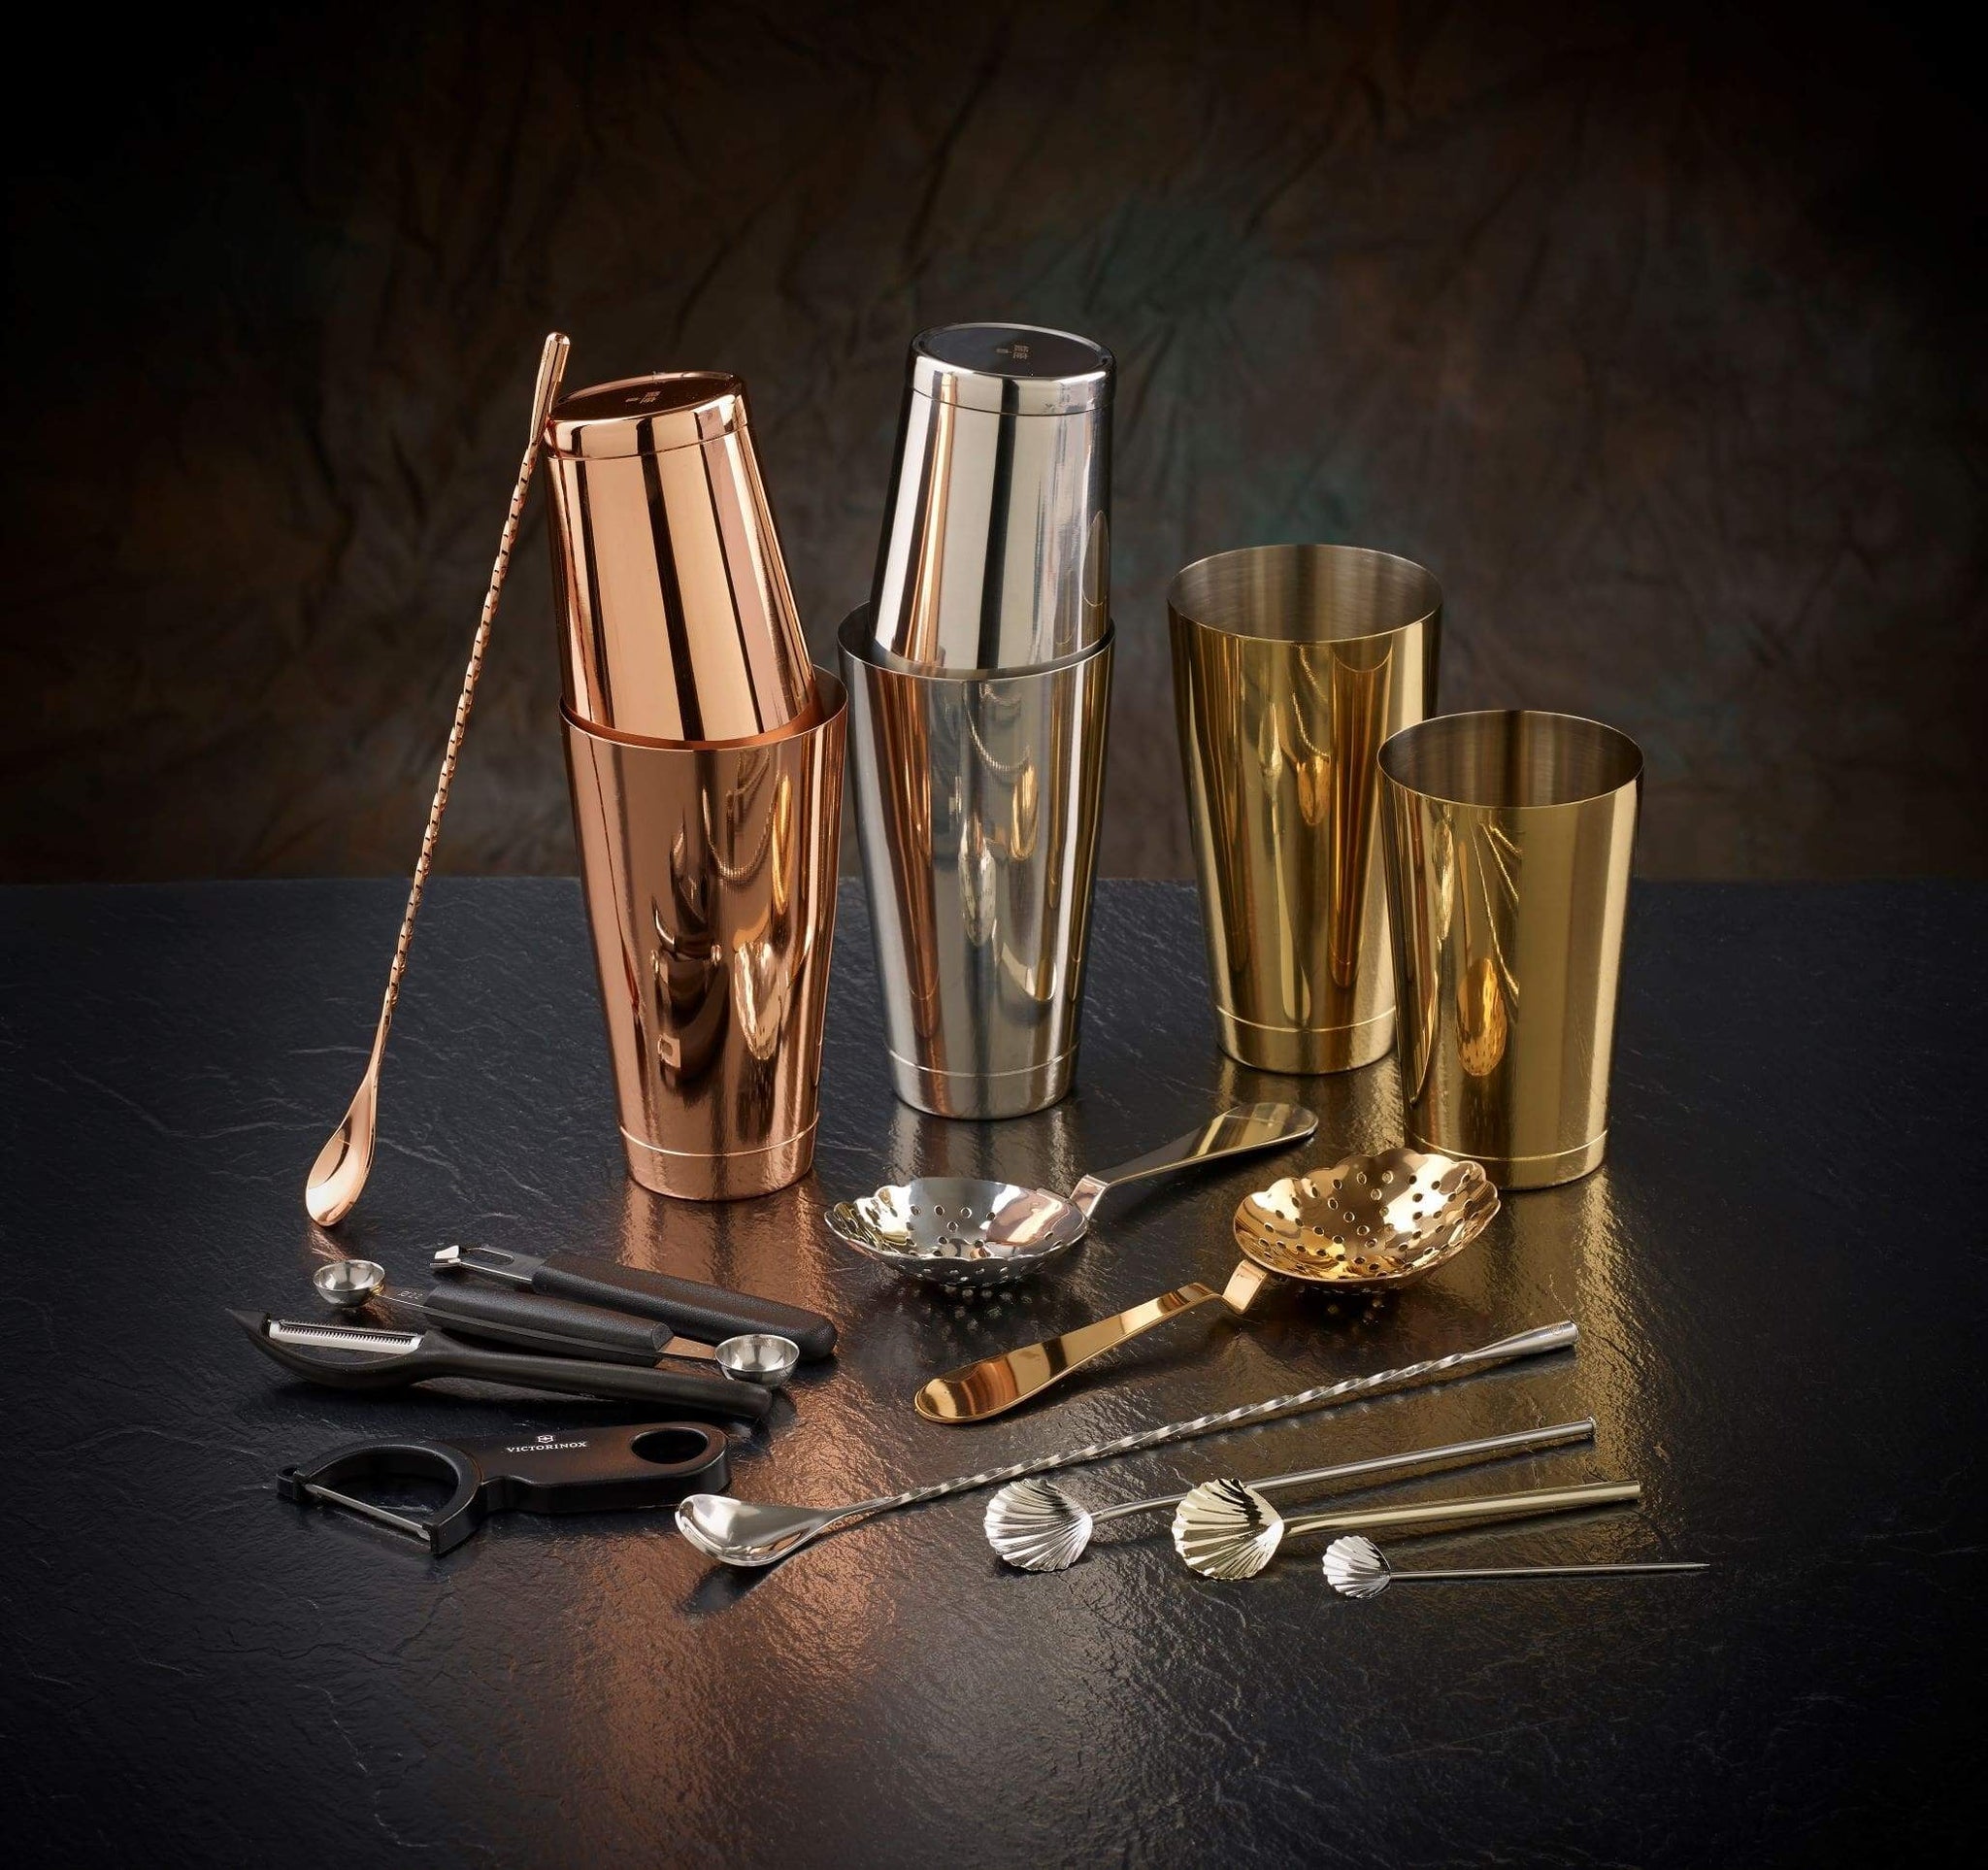 Urban Bar Luxury Glassware and Barware - Urban Bar USA